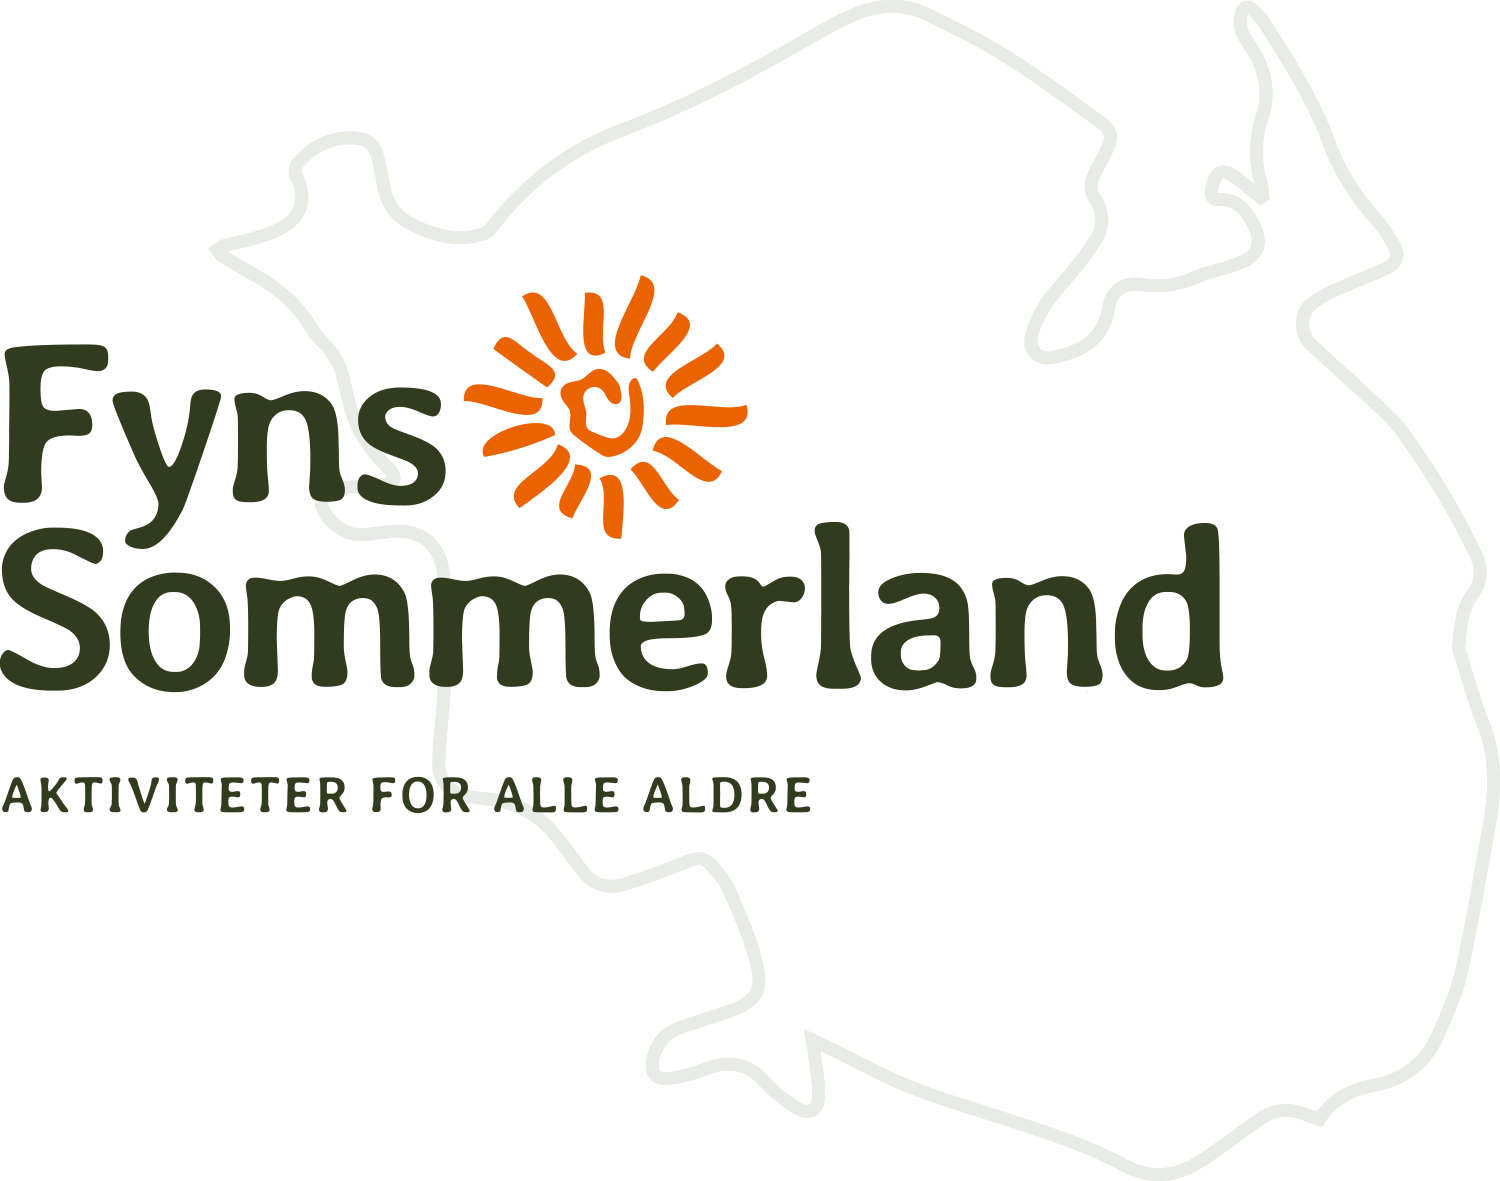 Fyns Sommerland